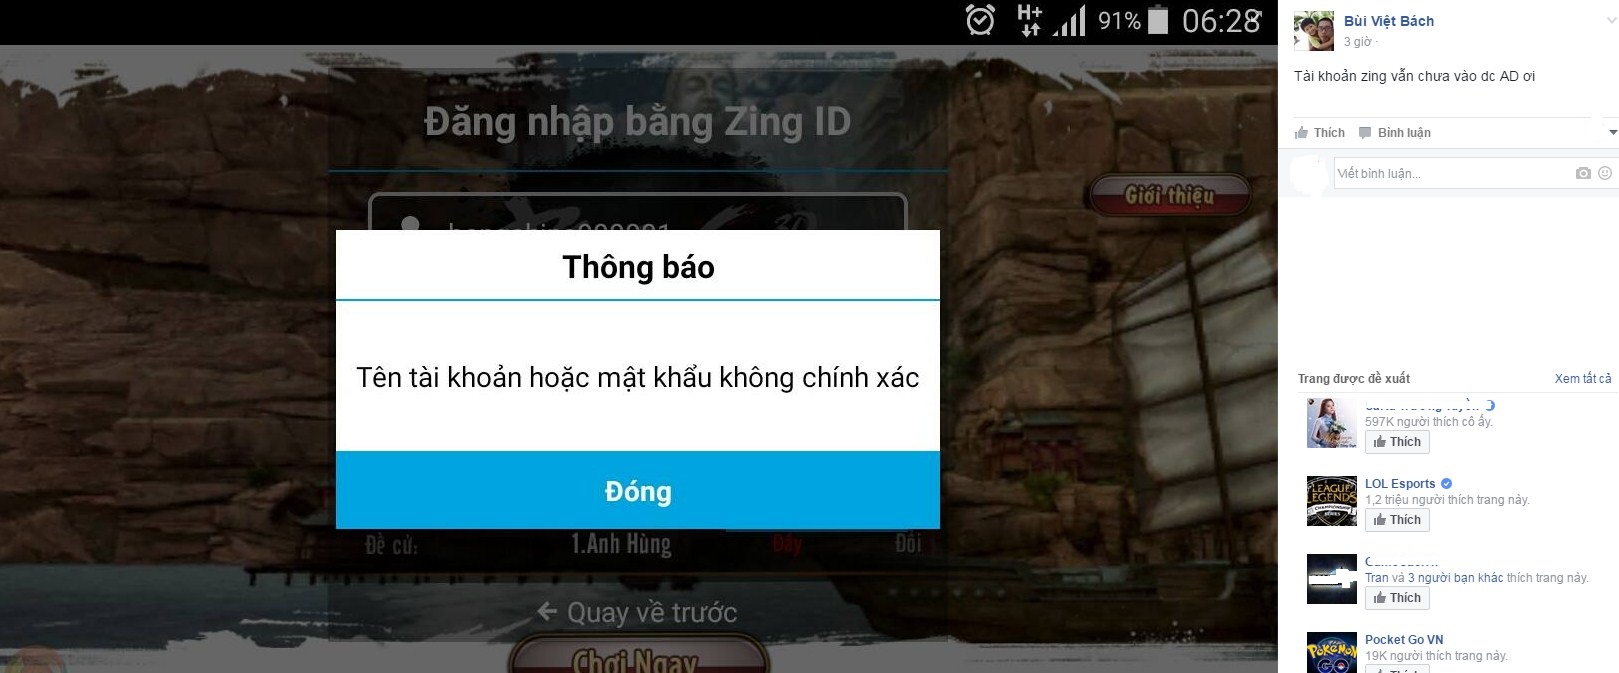 Phong Vân 3D Mobile bất ngờ gặp lỗi với Zing ID